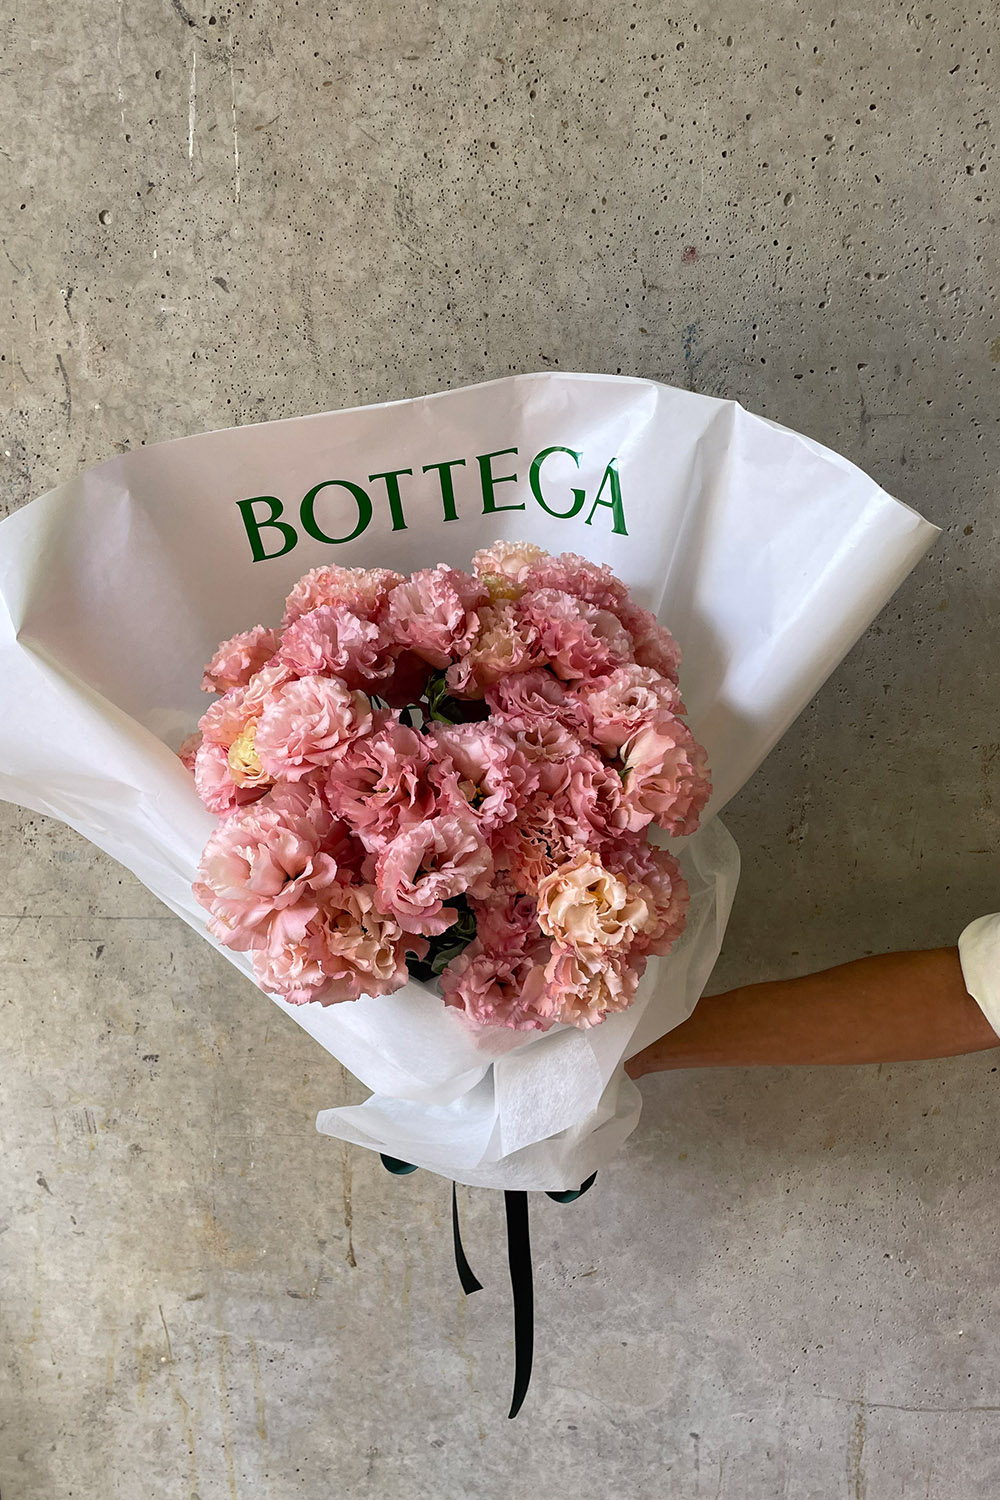 Bottega Veneta Melbourne Flowers by Flowers Vasette